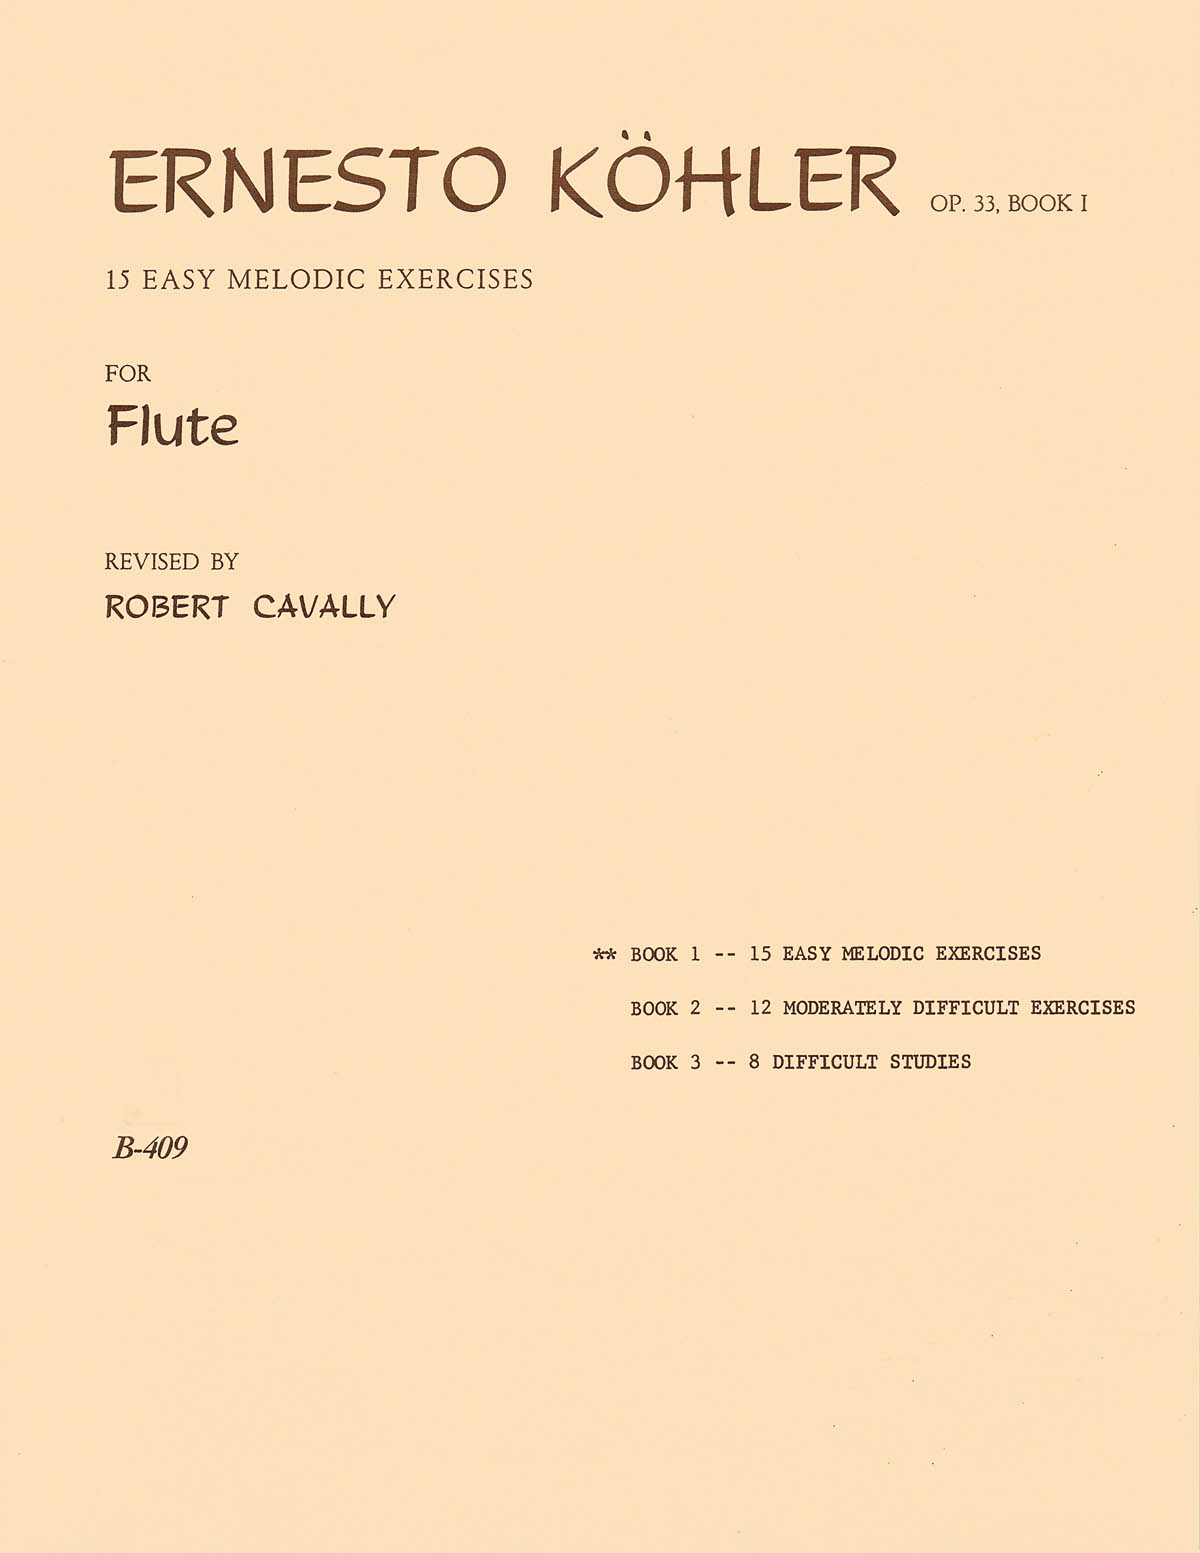 Ernesto Kohler: 15 Easy Melodic Exercises for Flute Op. 33, Part 1